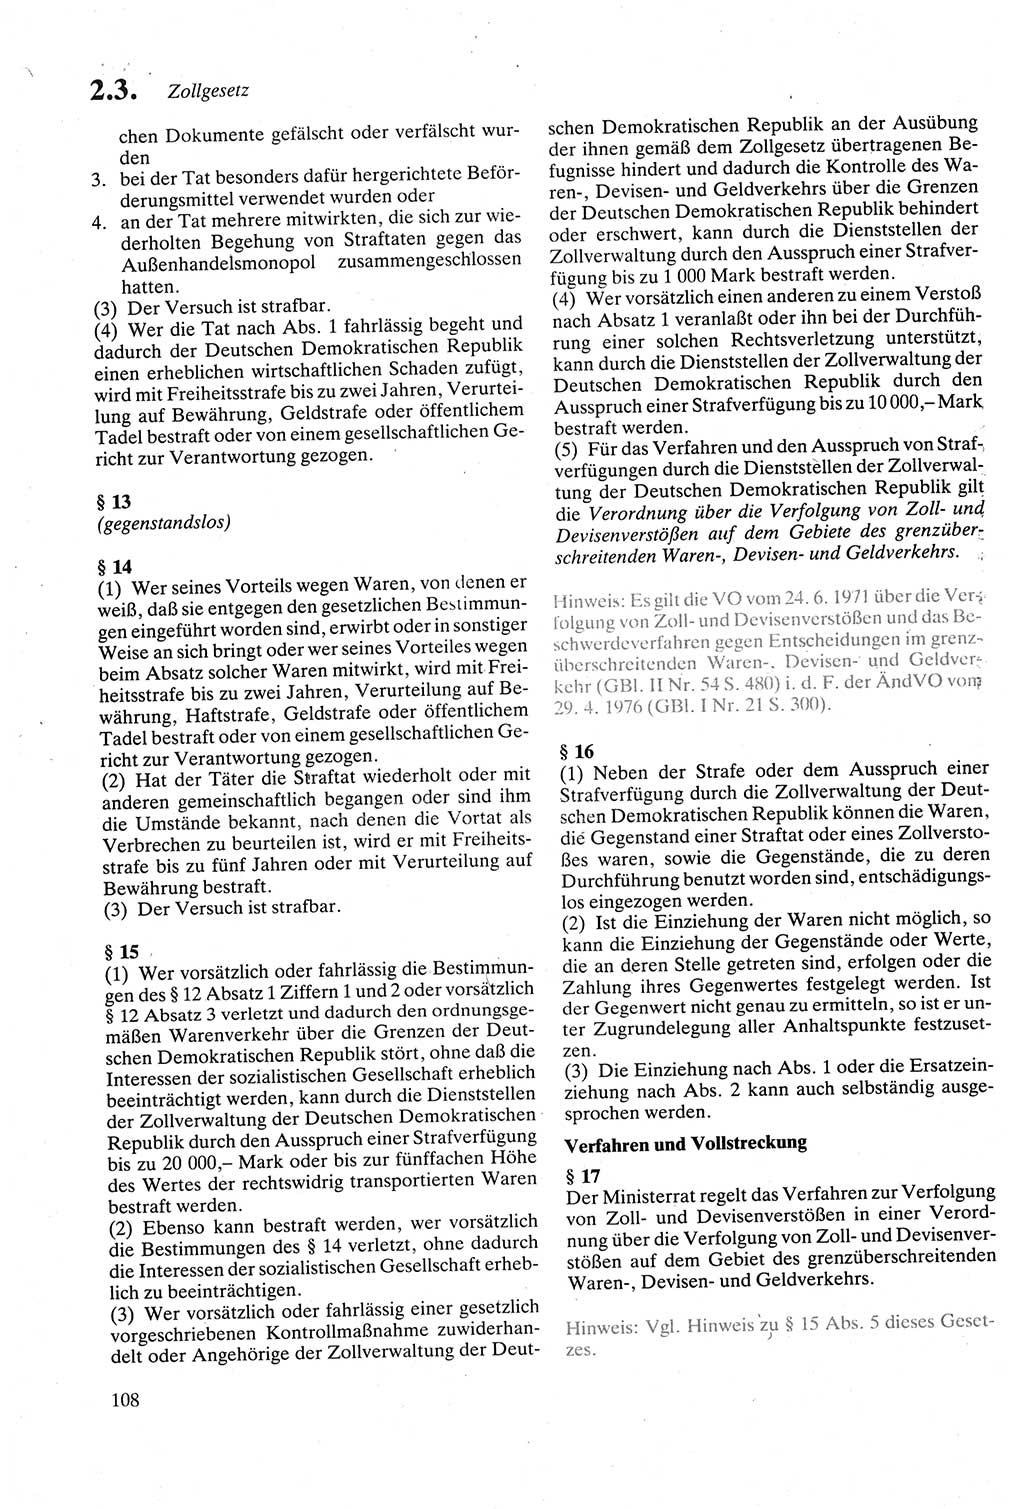 Strafgesetzbuch (StGB) der Deutschen Demokratischen Republik (DDR) sowie angrenzende Gesetze und Bestimmungen 1979, Seite 108 (StGB DDR Ges. Best. 1979, S. 108)